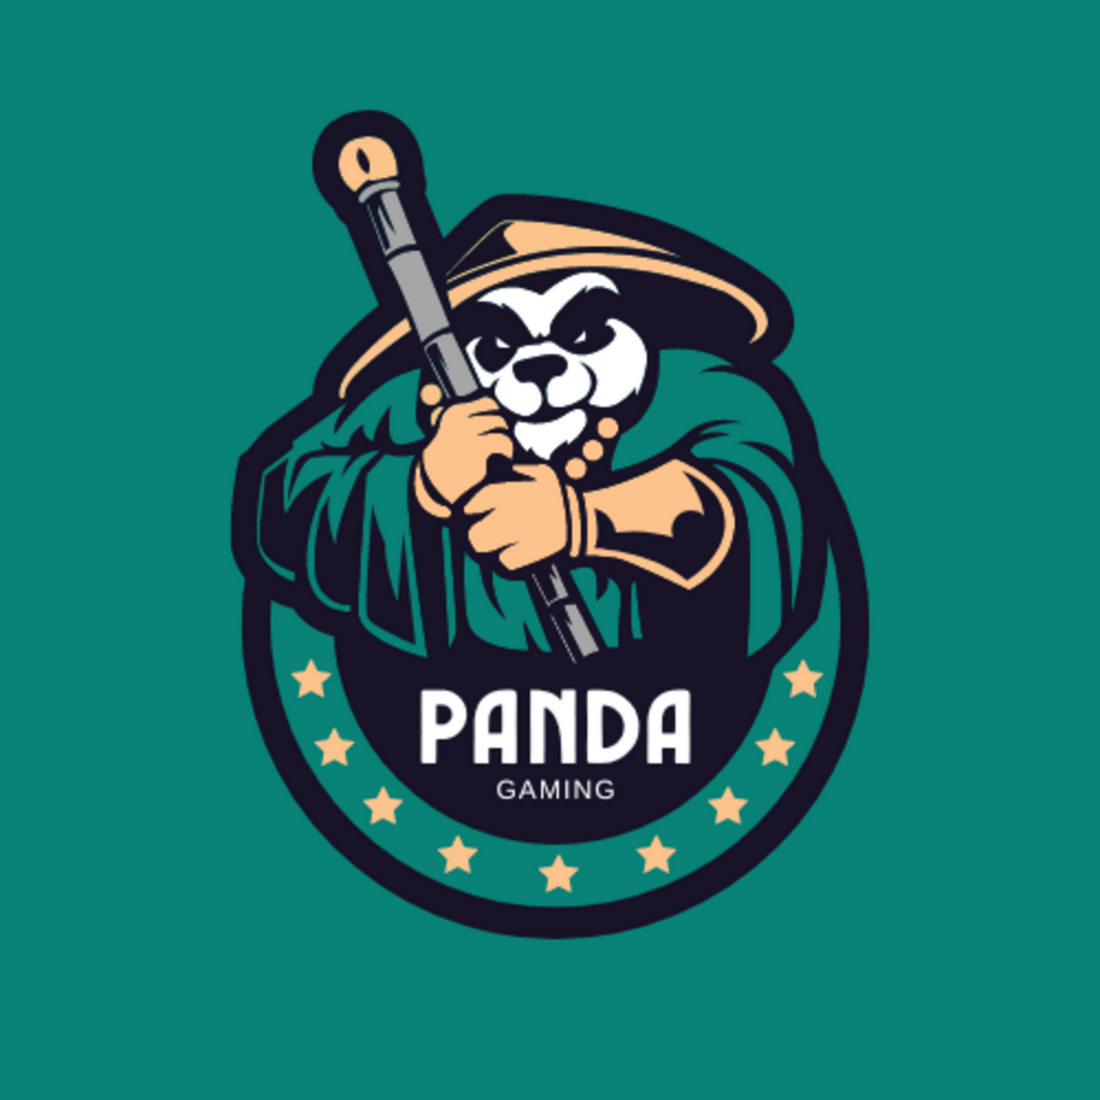 Panda holding a baseball bat and wearing a hat.